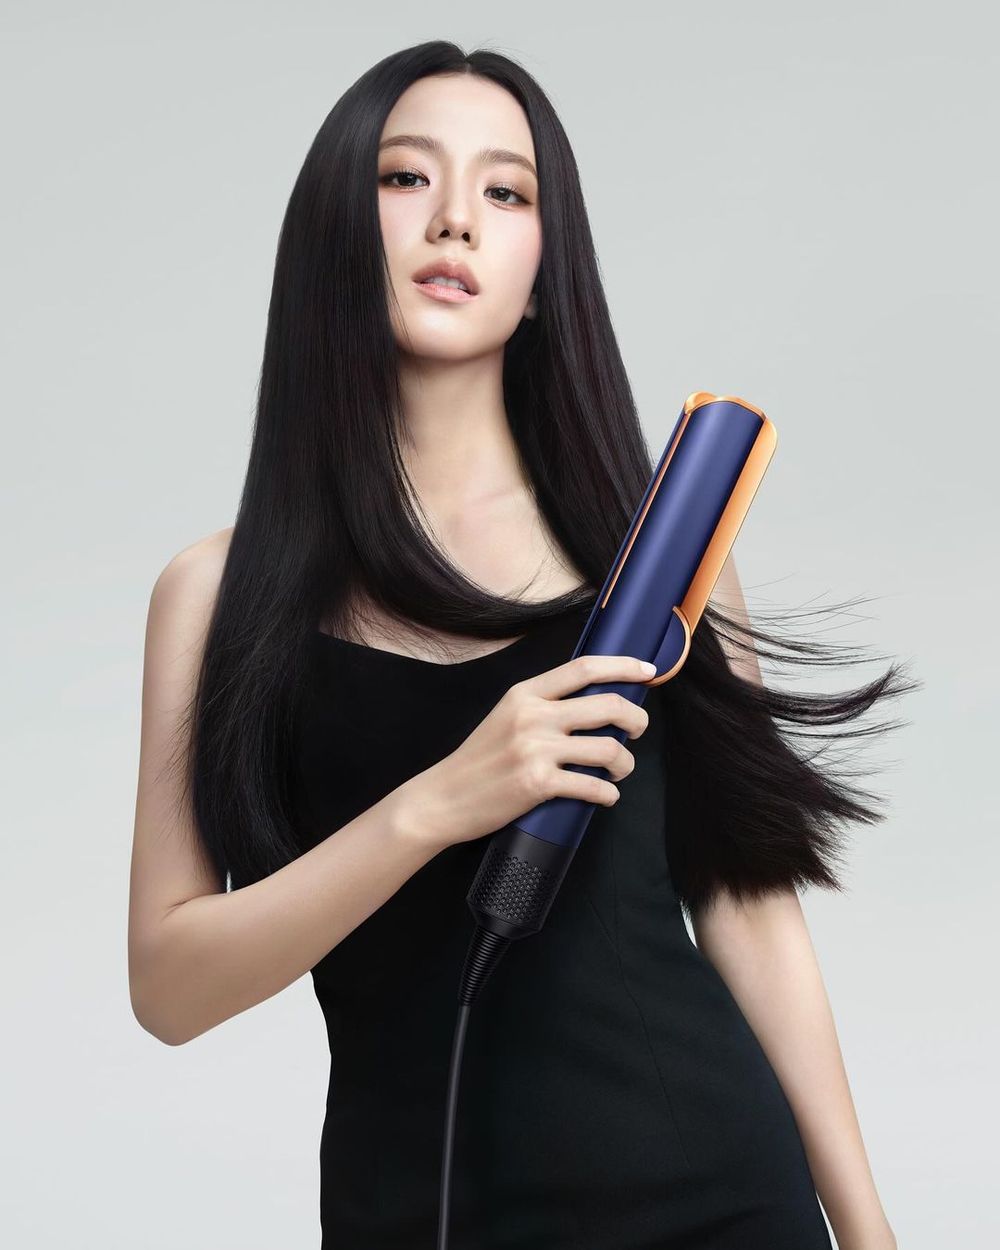 等到了！Jisoo個人廠牌BLISSOO正式上線，超美形象照全網驚呼「美到不科學」！-8